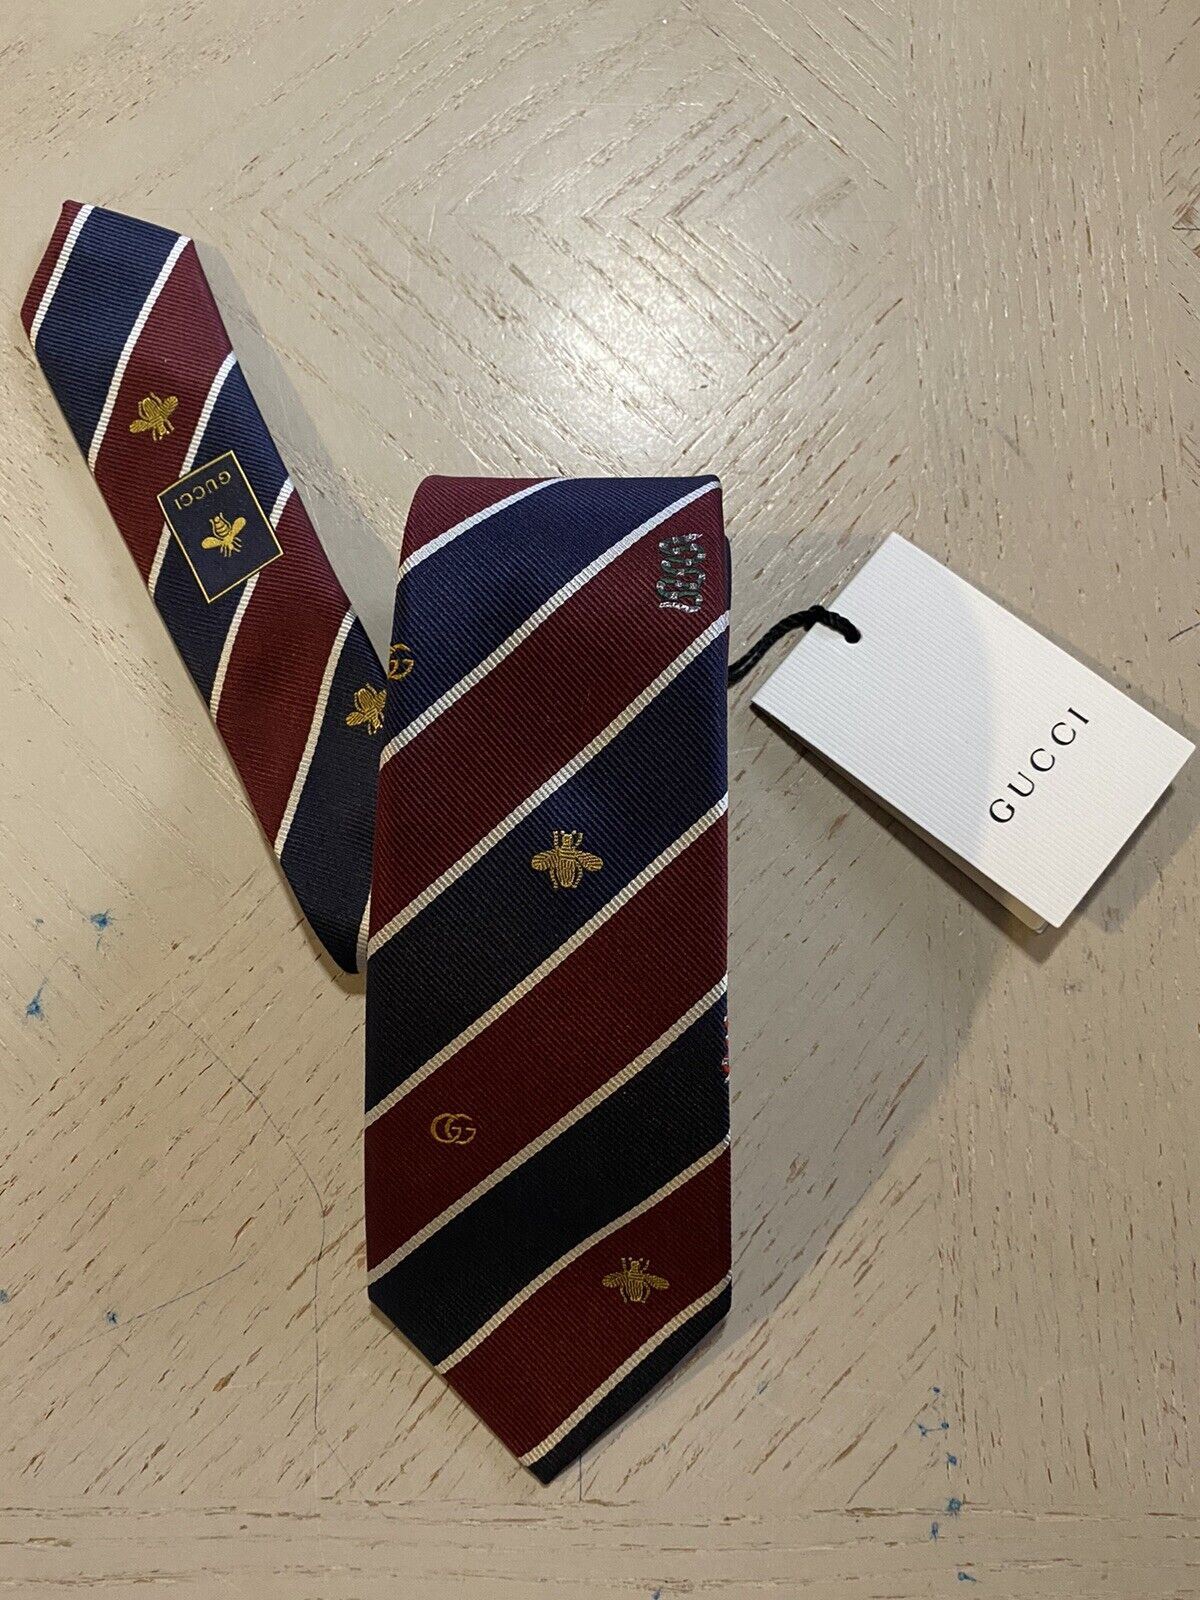 Neue Gucci Herren-Krawatte aus Seide mit GG-/Bienen-/Schlangenmuster, Marineblau/Burgunderrot, Italien